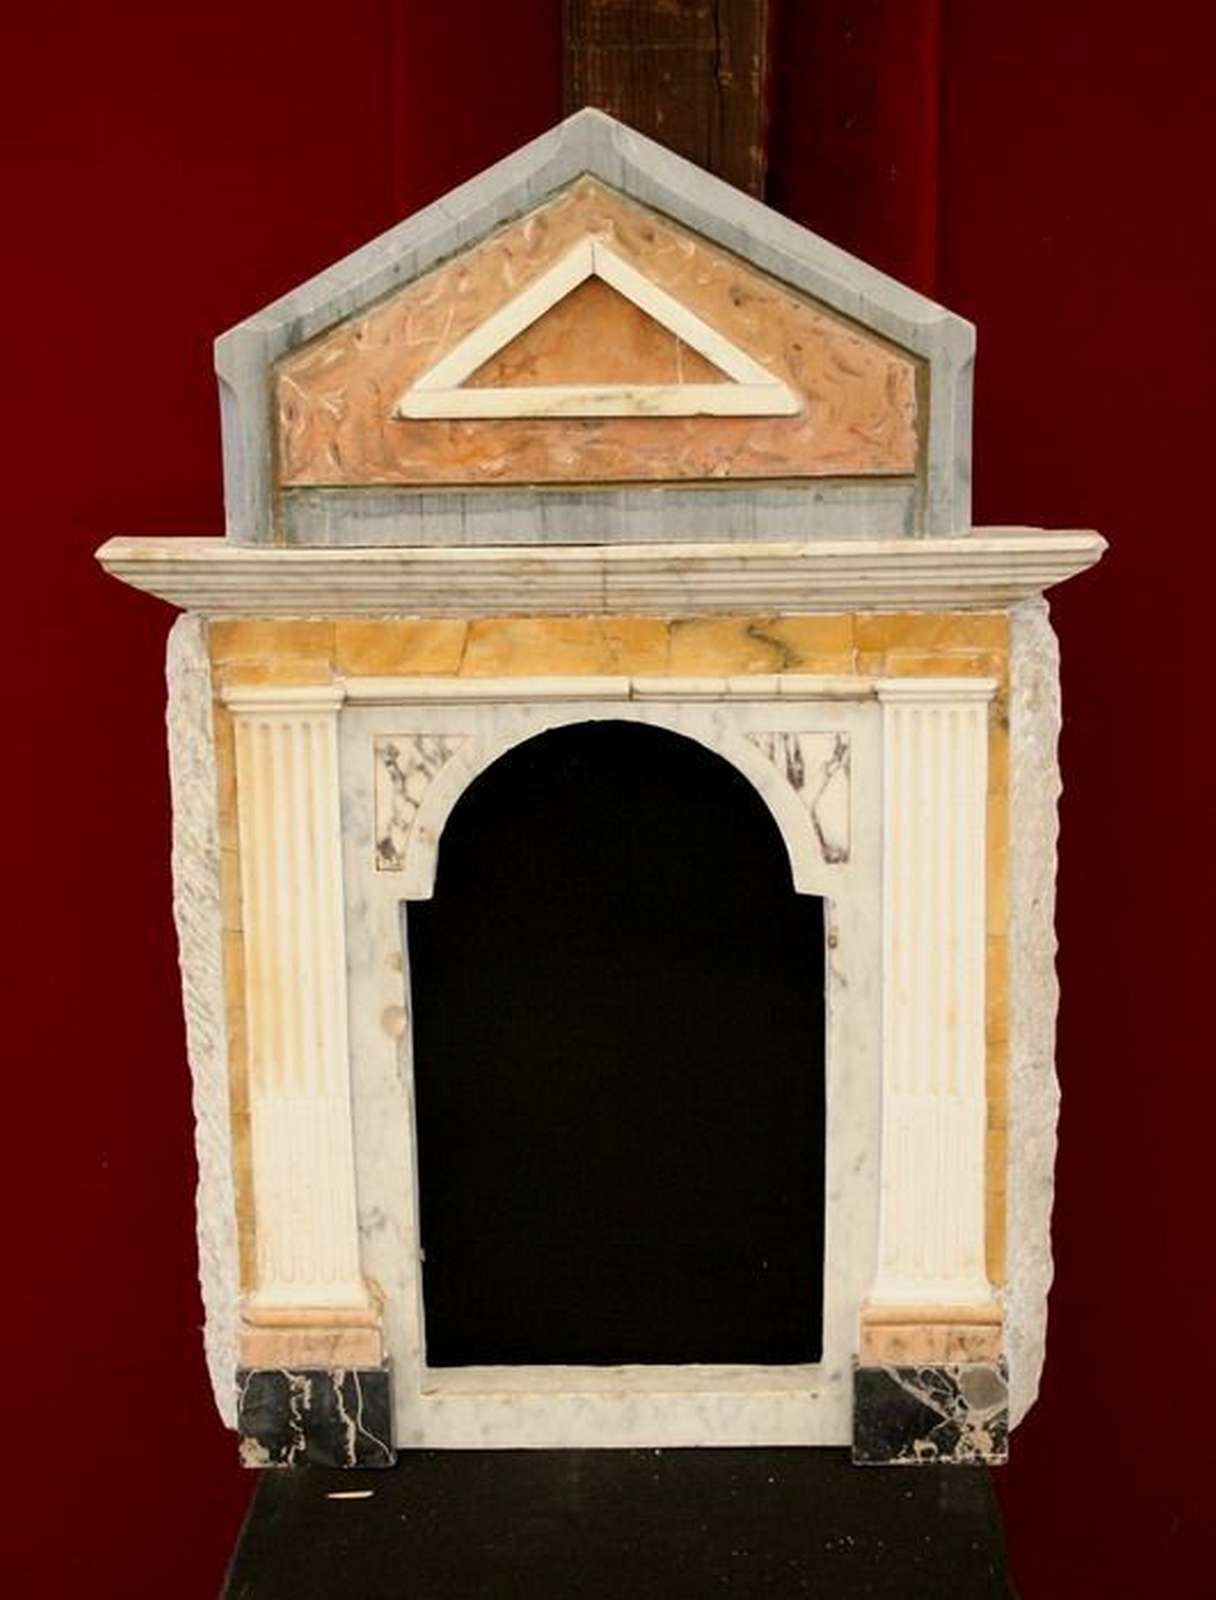 Antico ciborio in marmo. Epoca 1800. - Tabernacoli - Architettura - Prodotti - Antichità Fiorillo